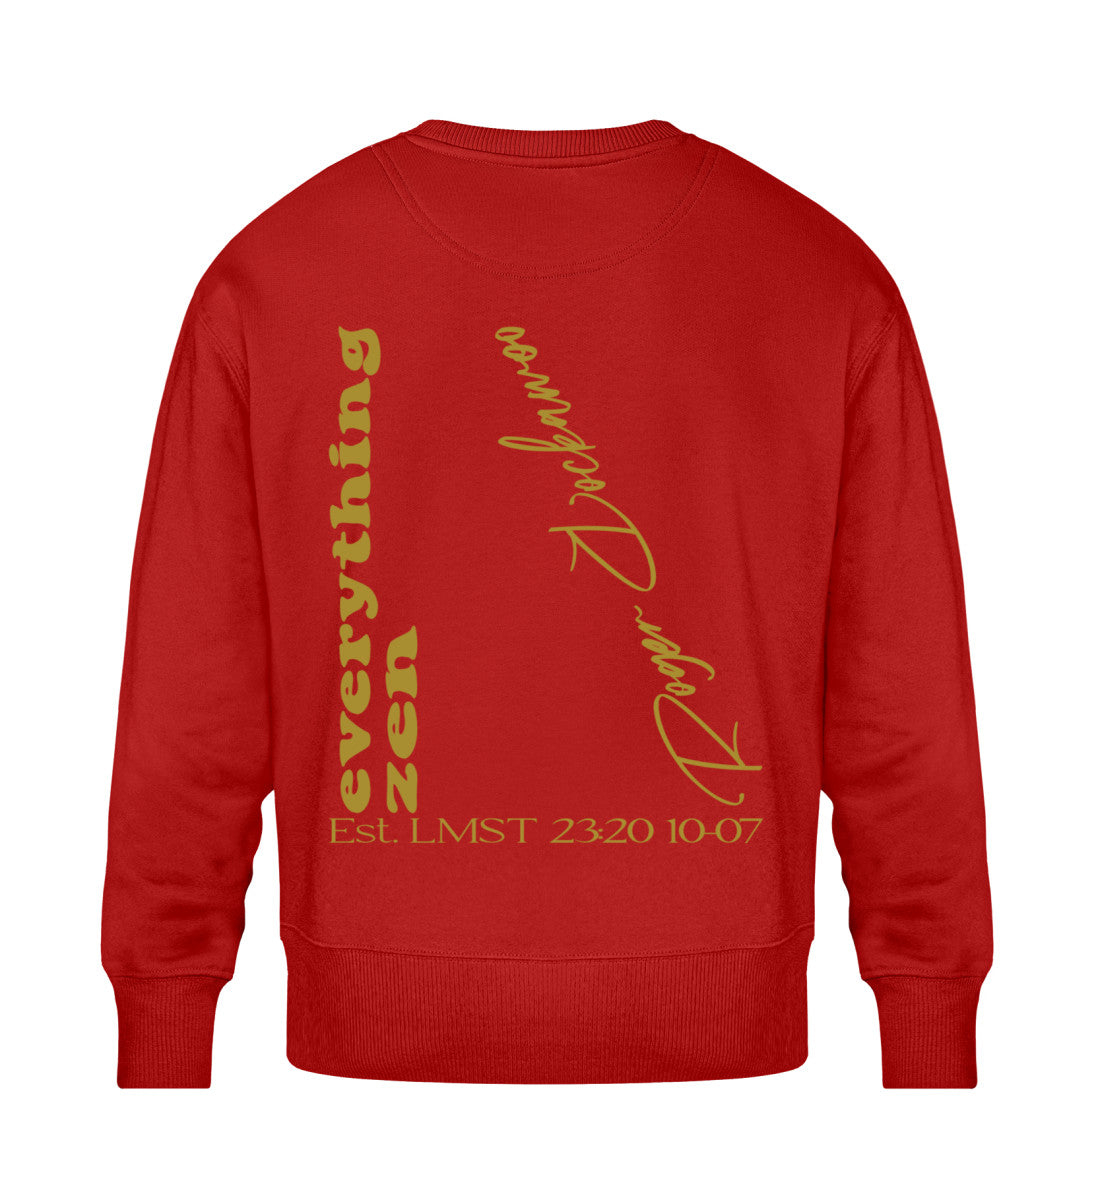 Rotes Sweatshirt Unisex für Frauen und Männer bedruckt mit dem Design der Roger Rockawoo Kollektion Yoga Everything Zen